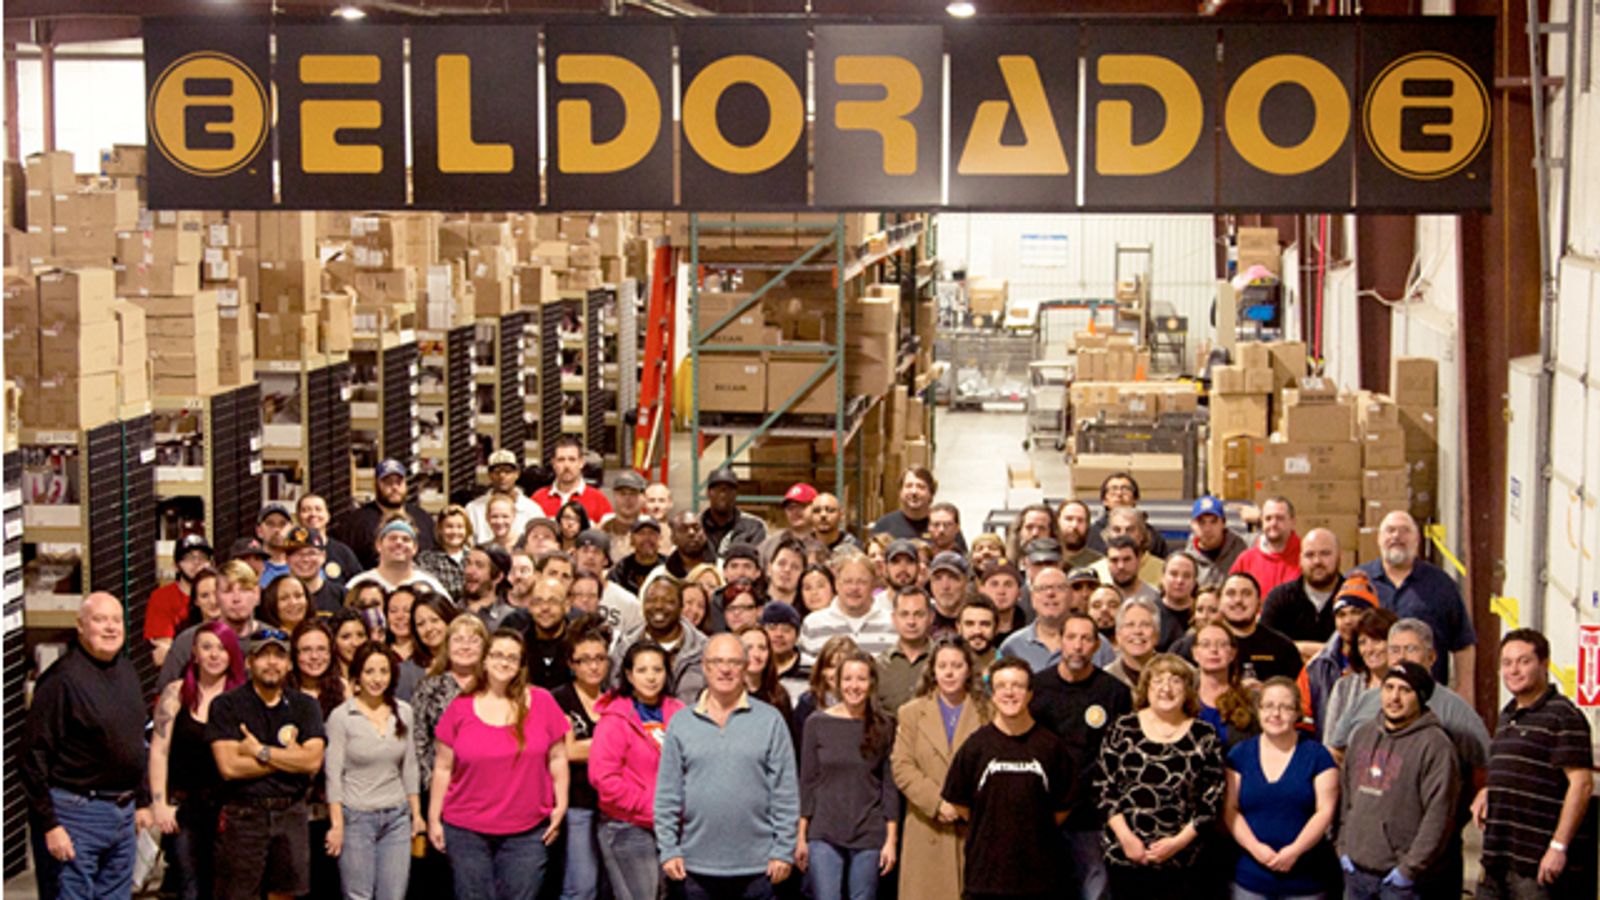 Eldorado Helps Fight Colorado Hunger